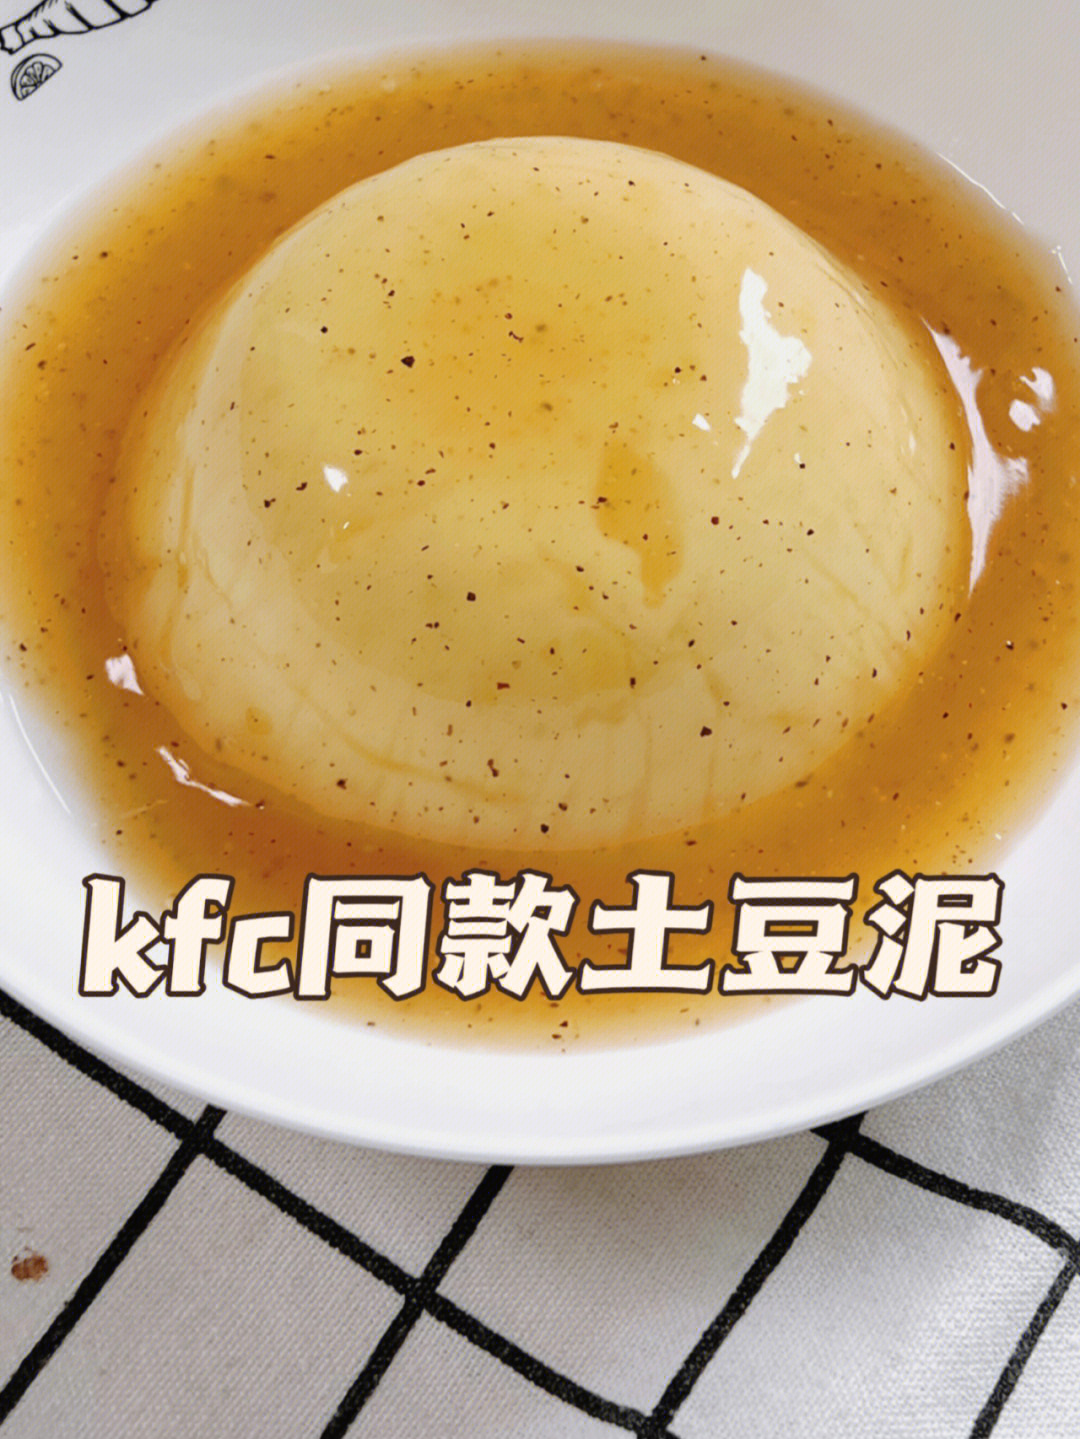 肯德基土豆泥酱汁配方图片